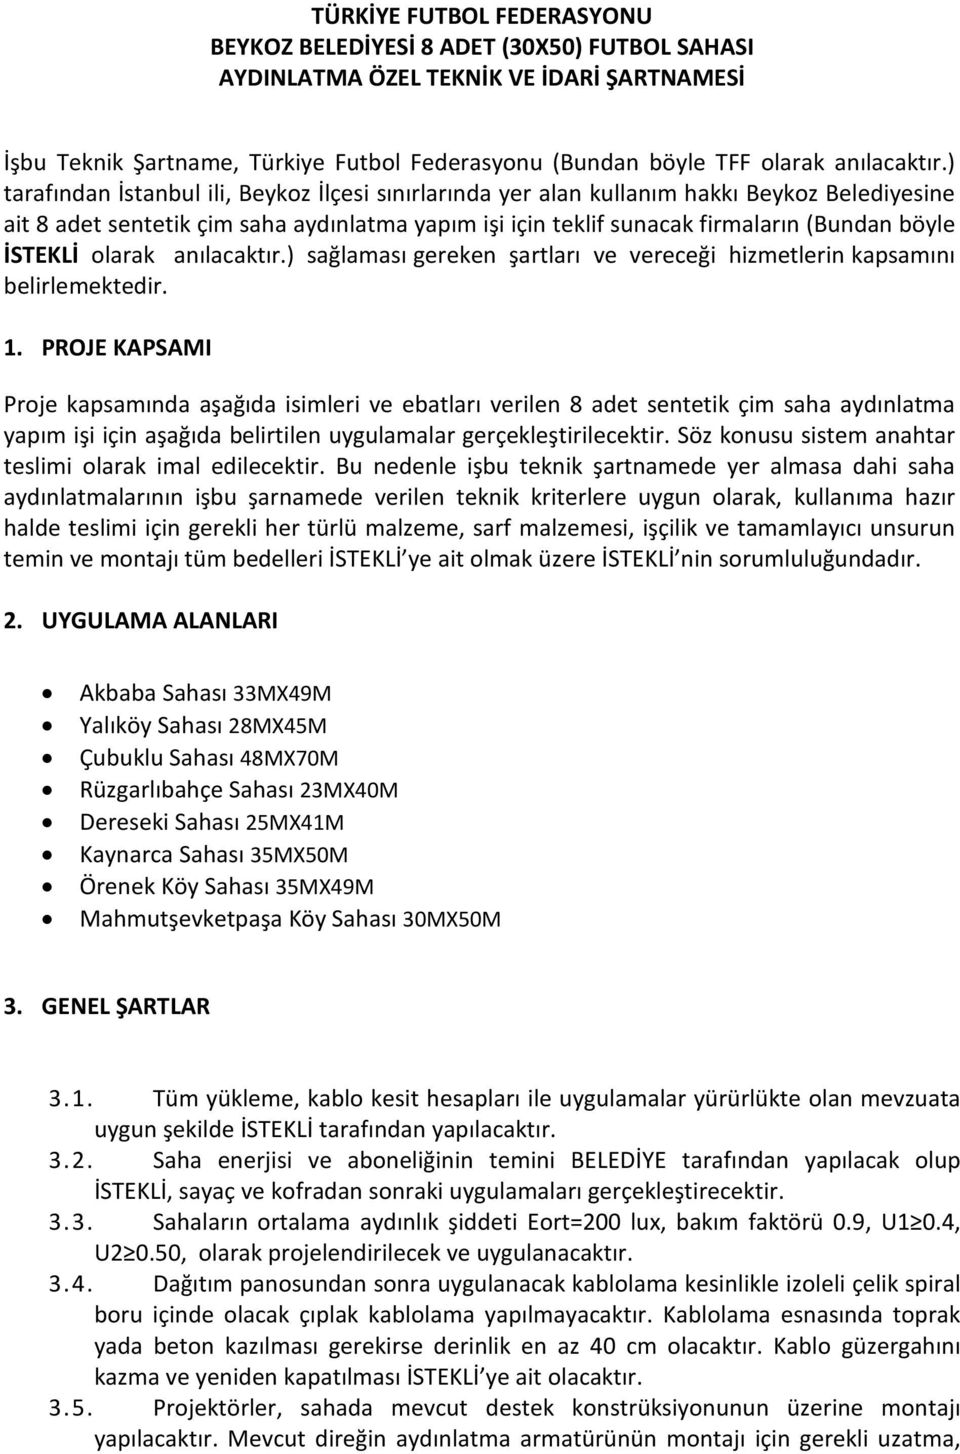 ) tarafından İstanbul ili, Beykoz İlçesi sınırlarında yer alan kullanım hakkı Beykoz Belediyesine ait 8 adet sentetik çim saha aydınlatma yapım işi için teklif sunacak firmaların (Bundan böyle